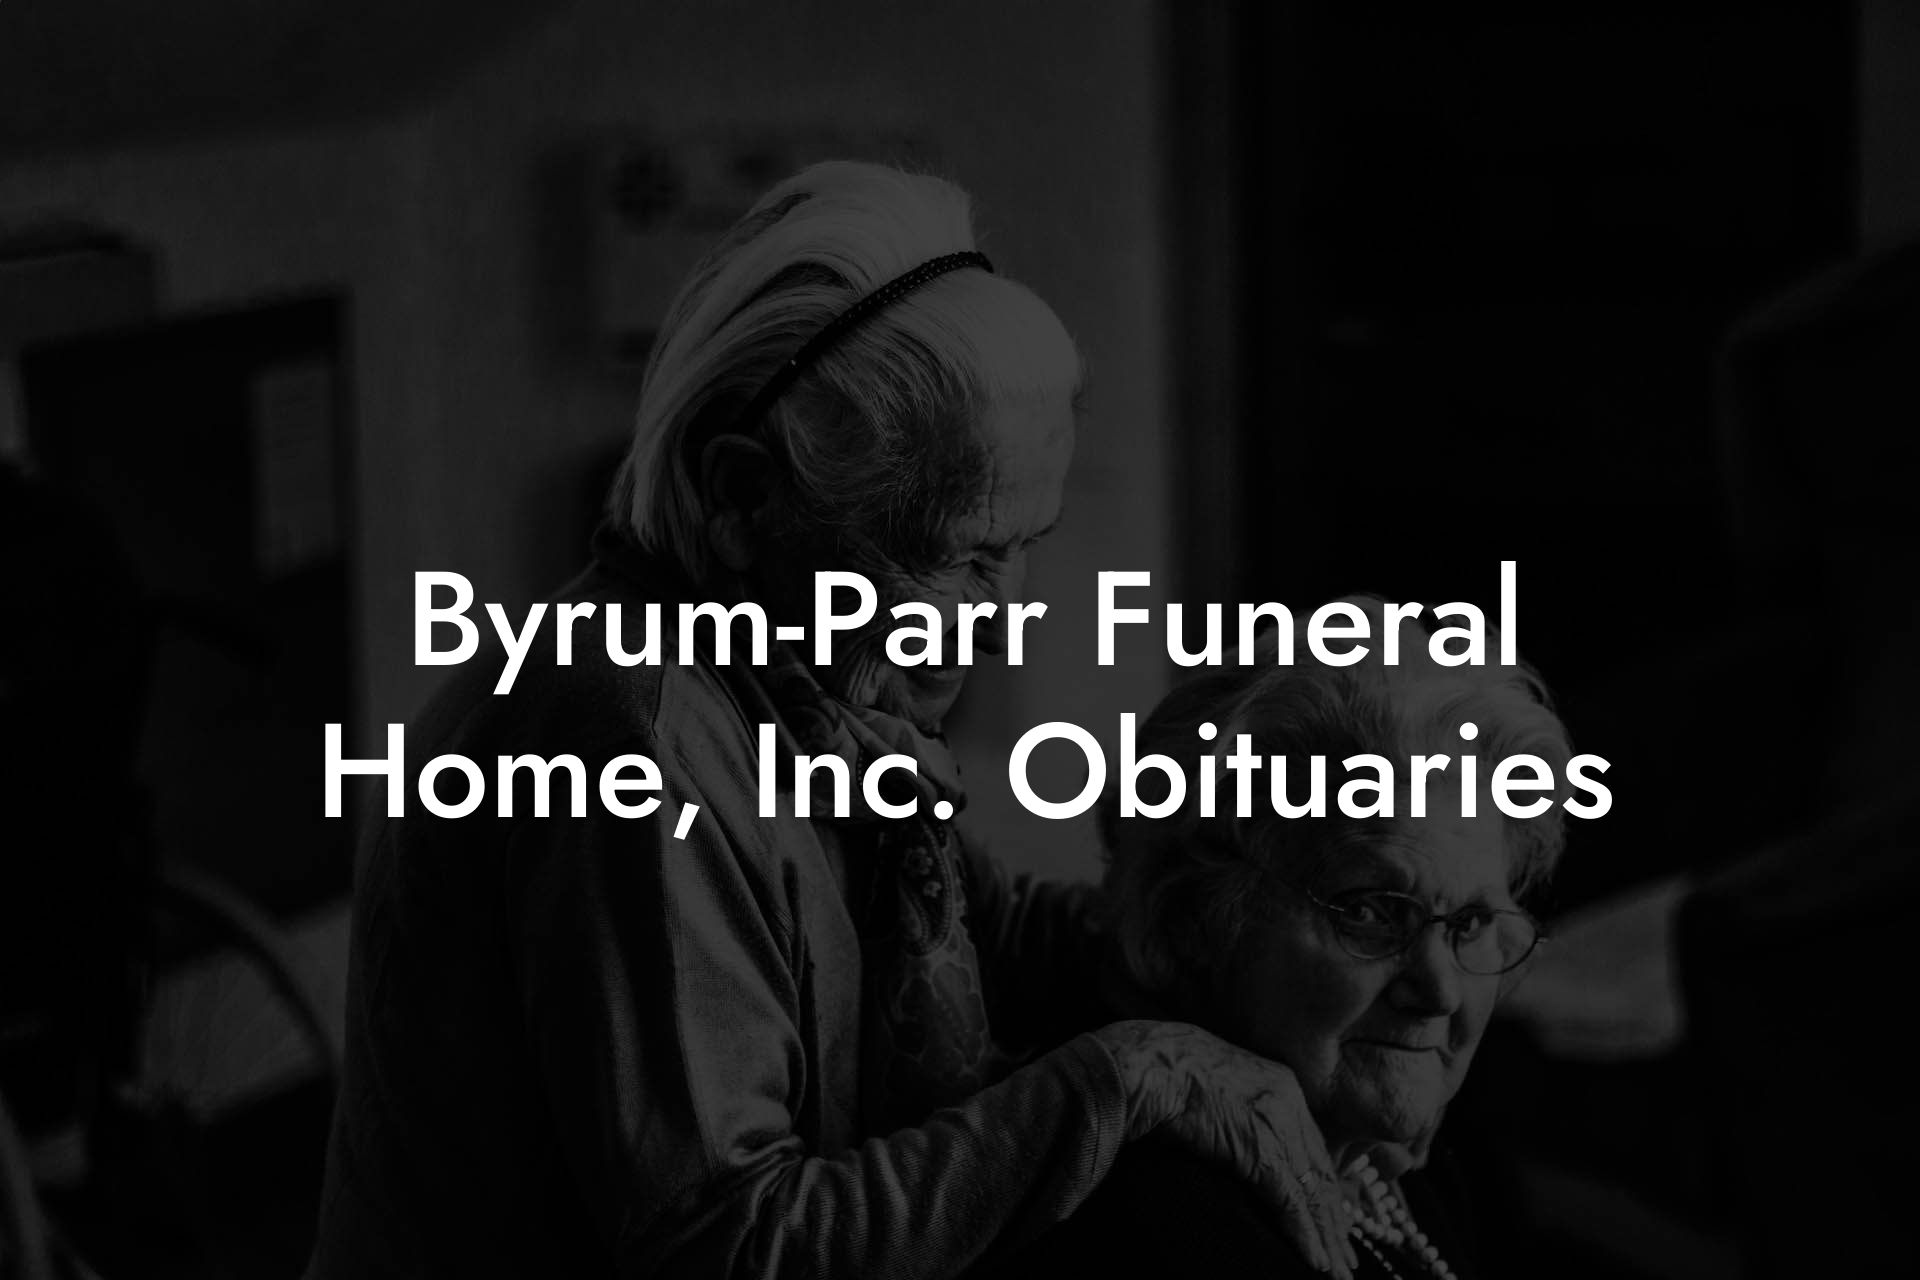 Byrum-Parr Funeral Home, Inc. Obituaries